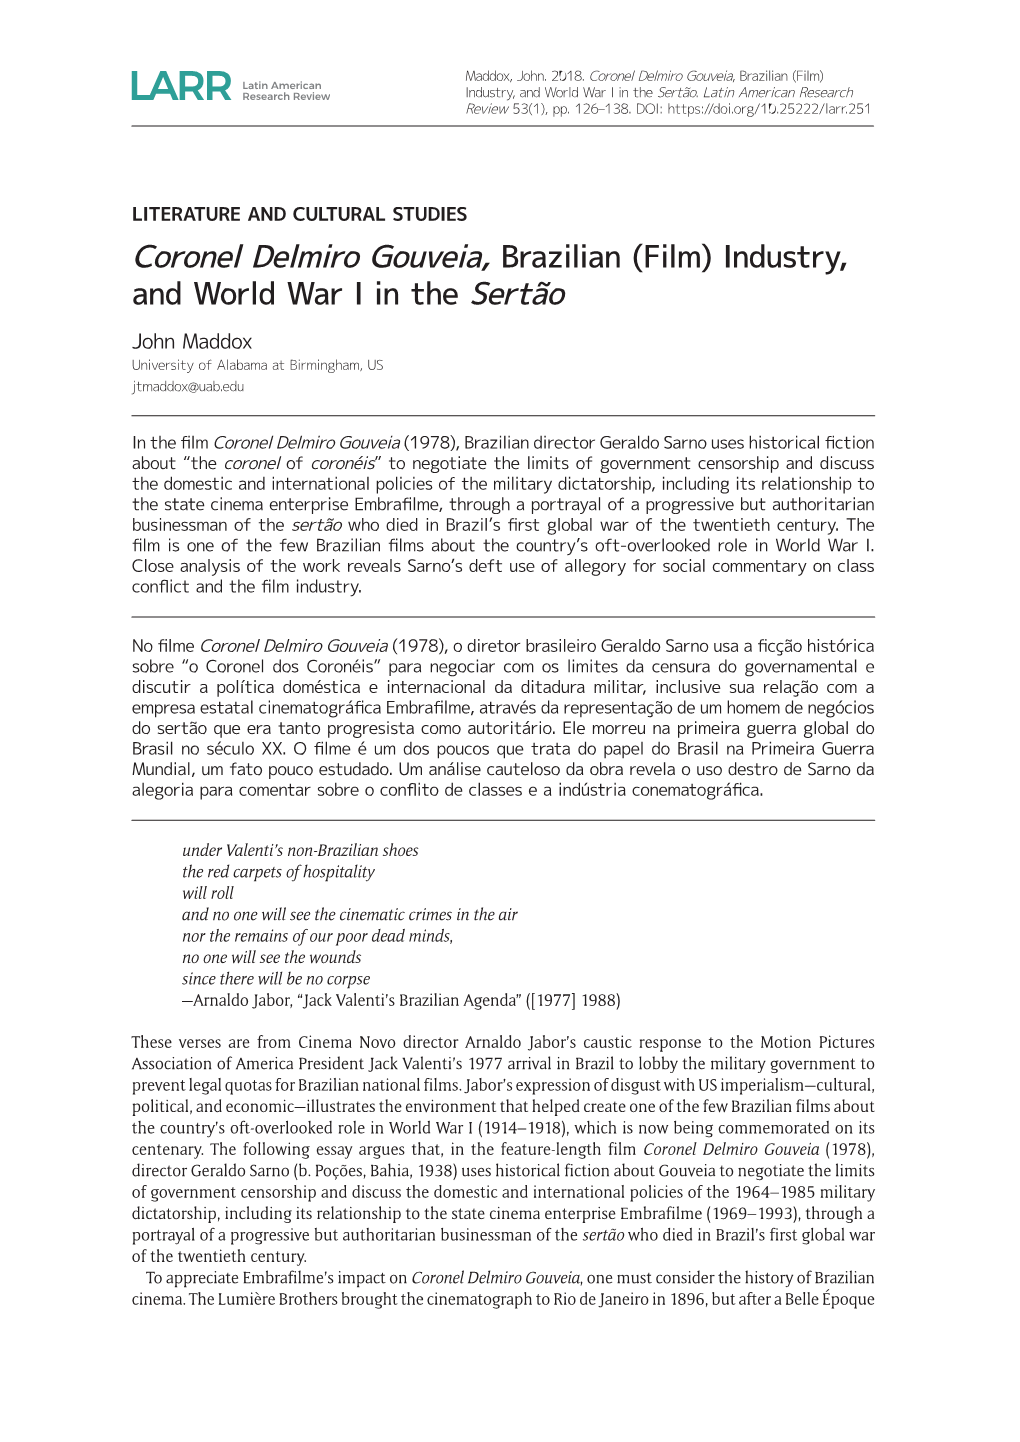 Coronel Delmiro Gouveia, Brazilian (Film) Industry, and World War I in the Sertão